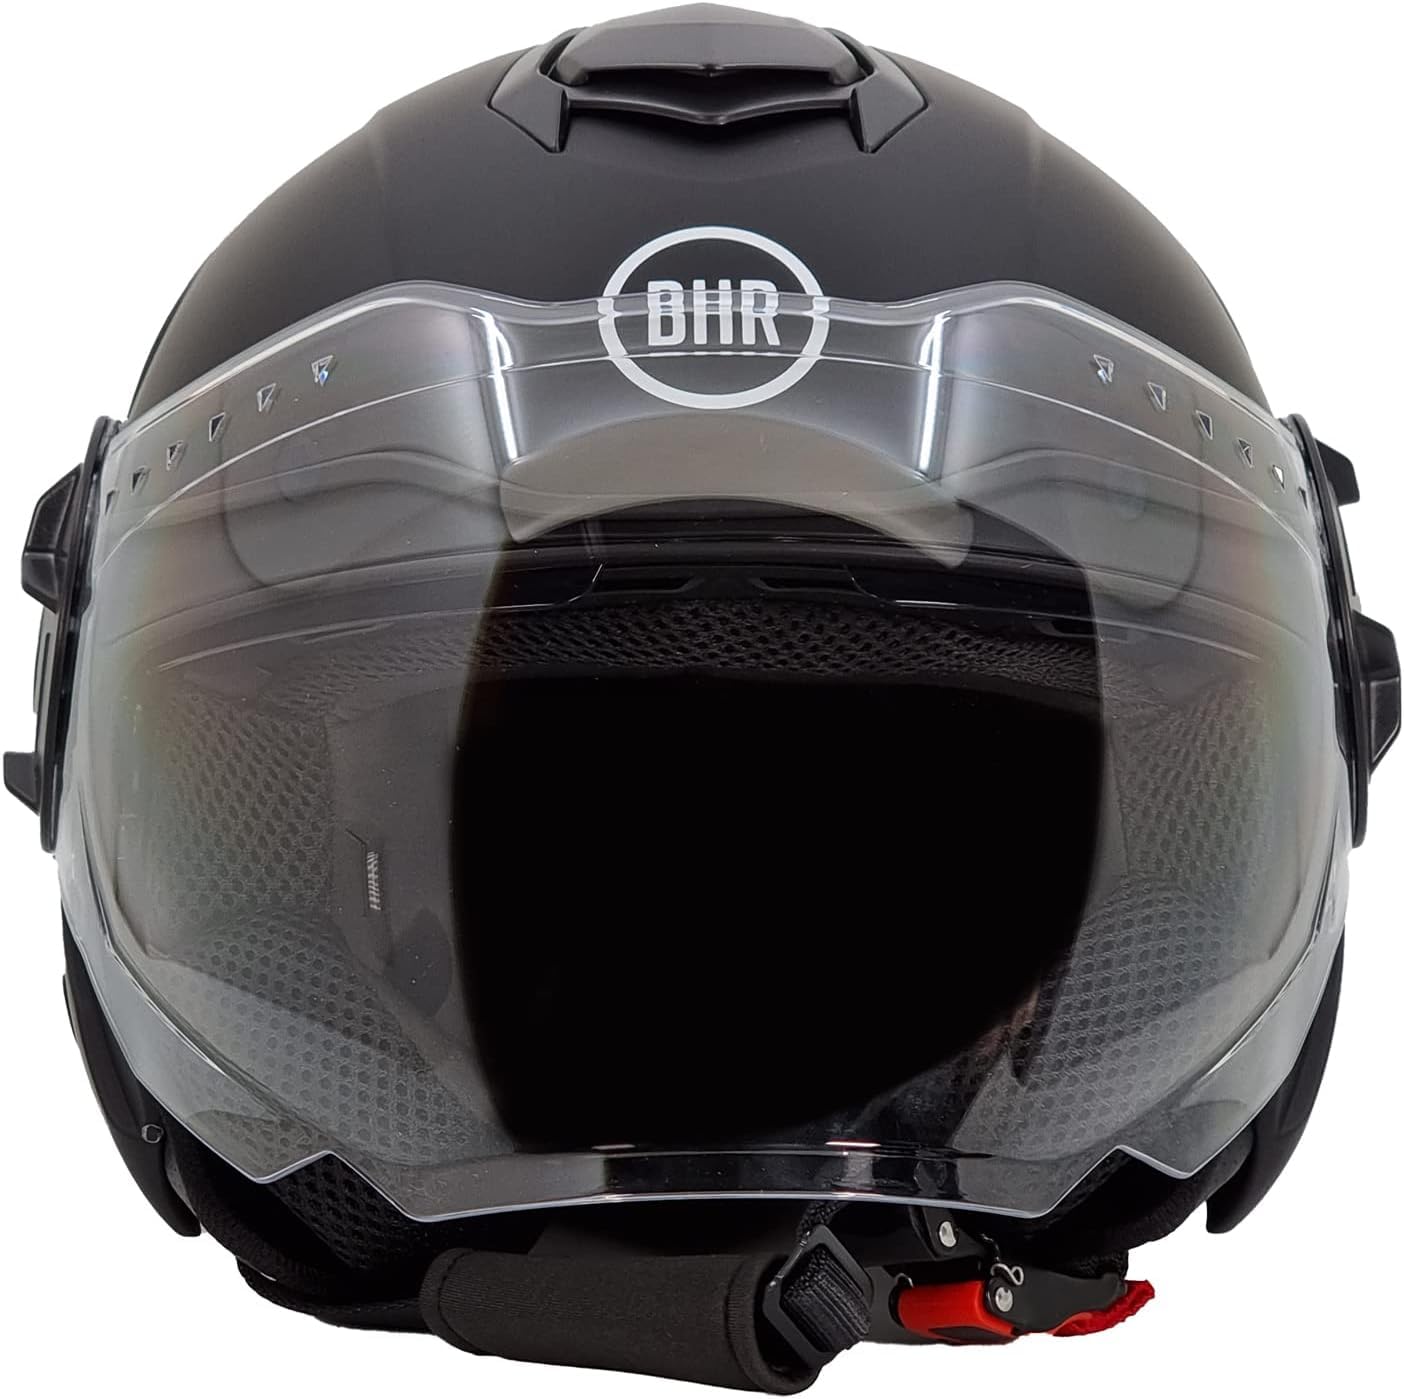 BHR Jet Helm Double Visor 830 FLASH, Scooter Helm mit ECE 22.06 Zulassung, Leichter & komfortabler Jet Helm mit innenliegender Sonnenblende, Mattschwarz, M